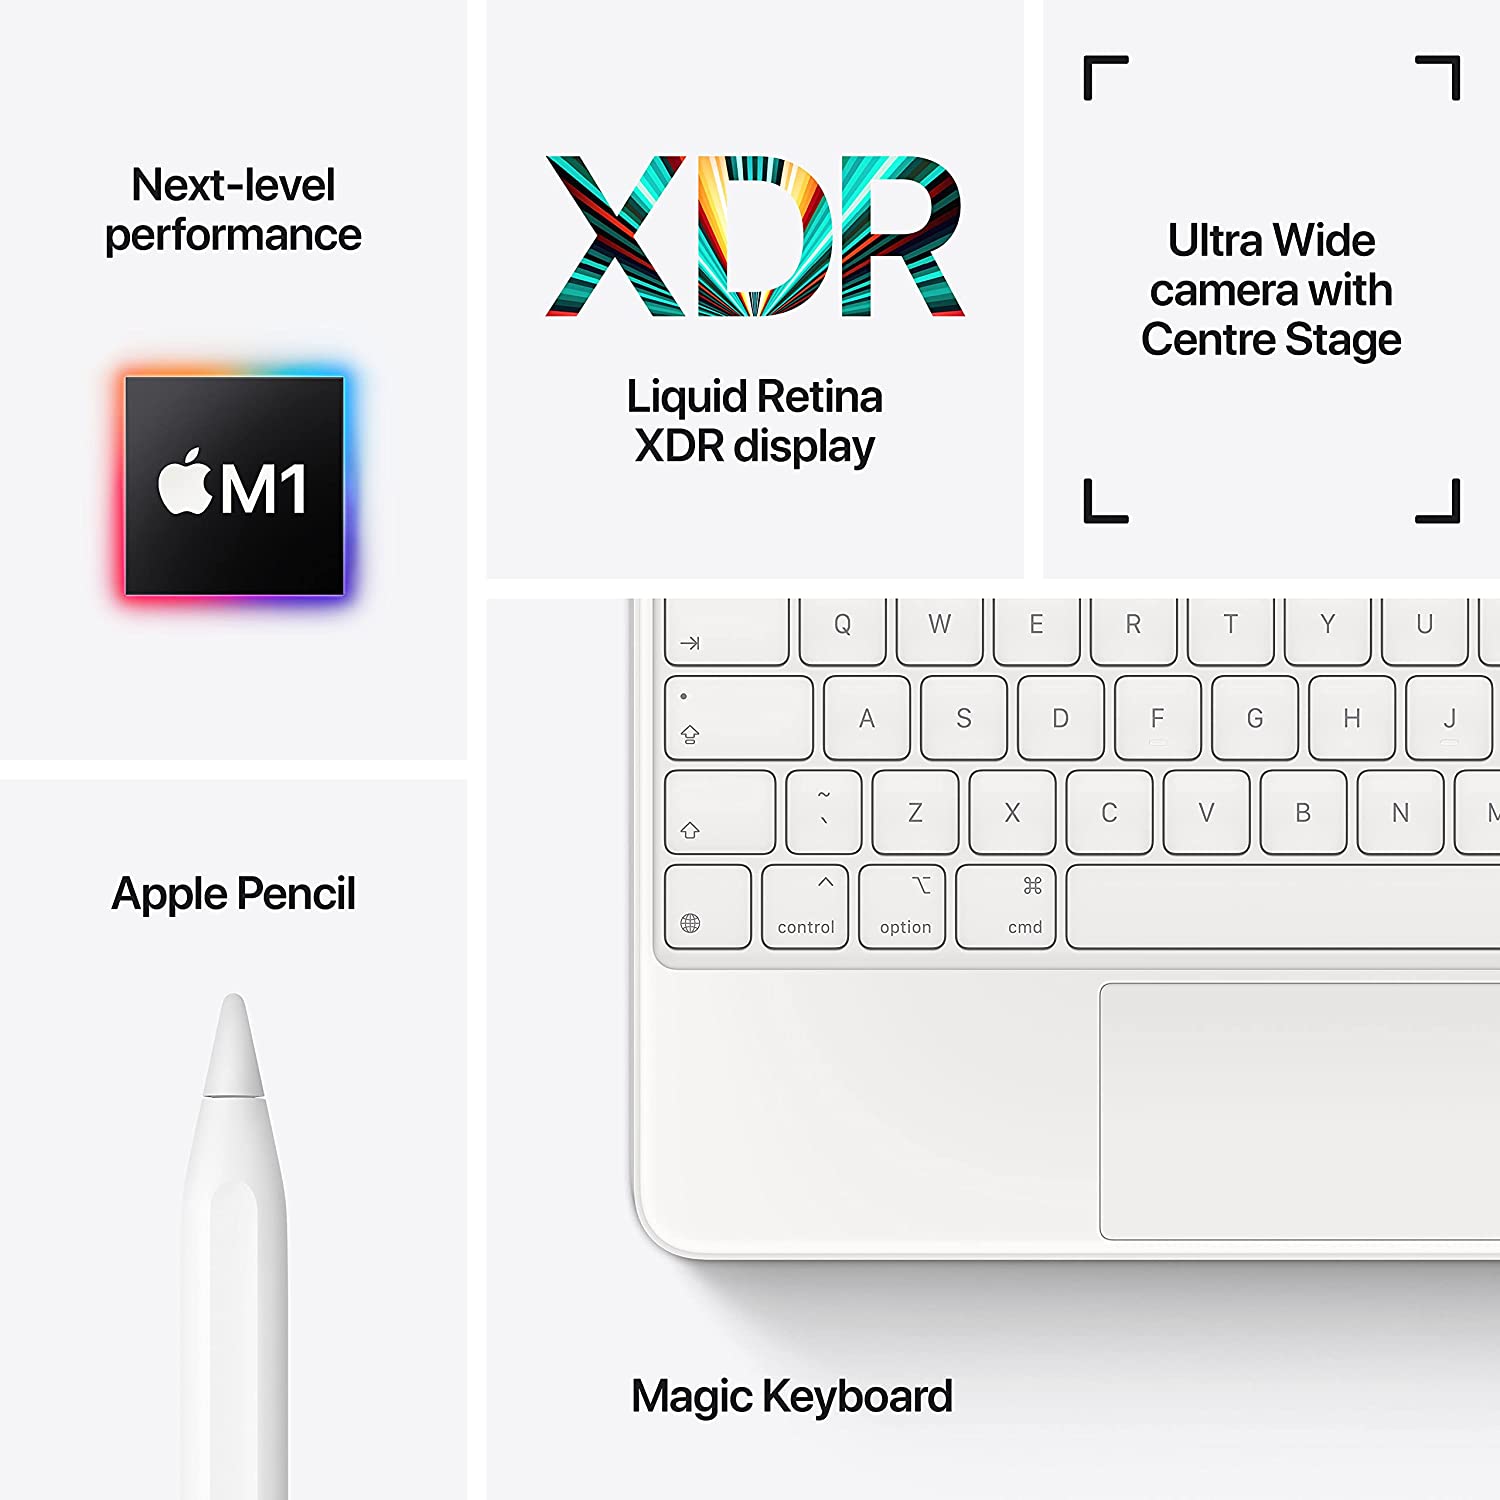 2021 Apple iPad Pro features